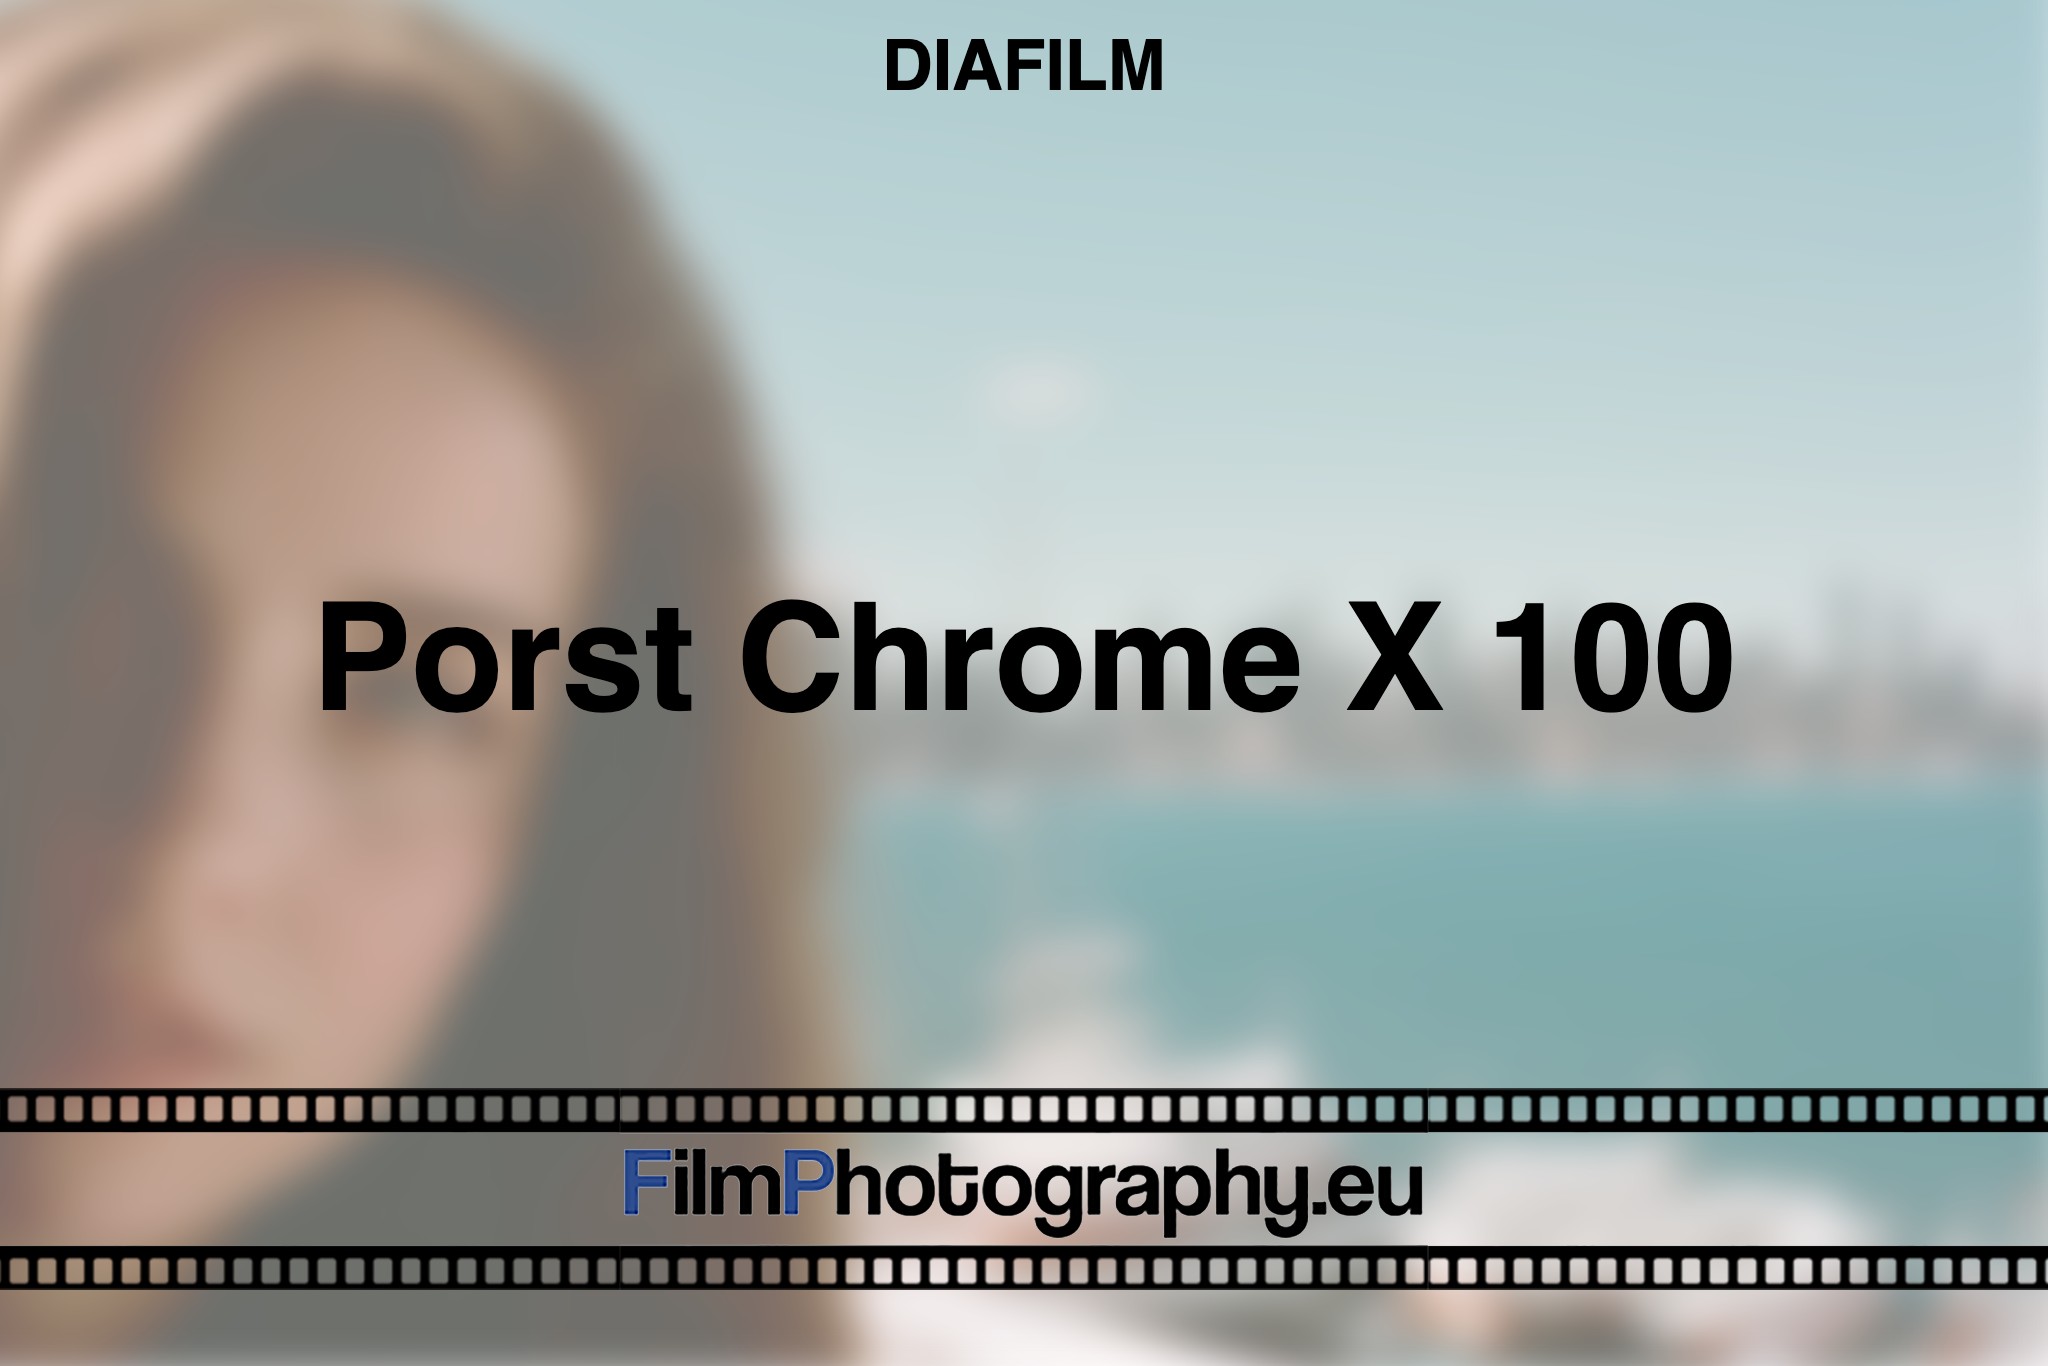 porst-chrome-x-100-diafilm-bnv